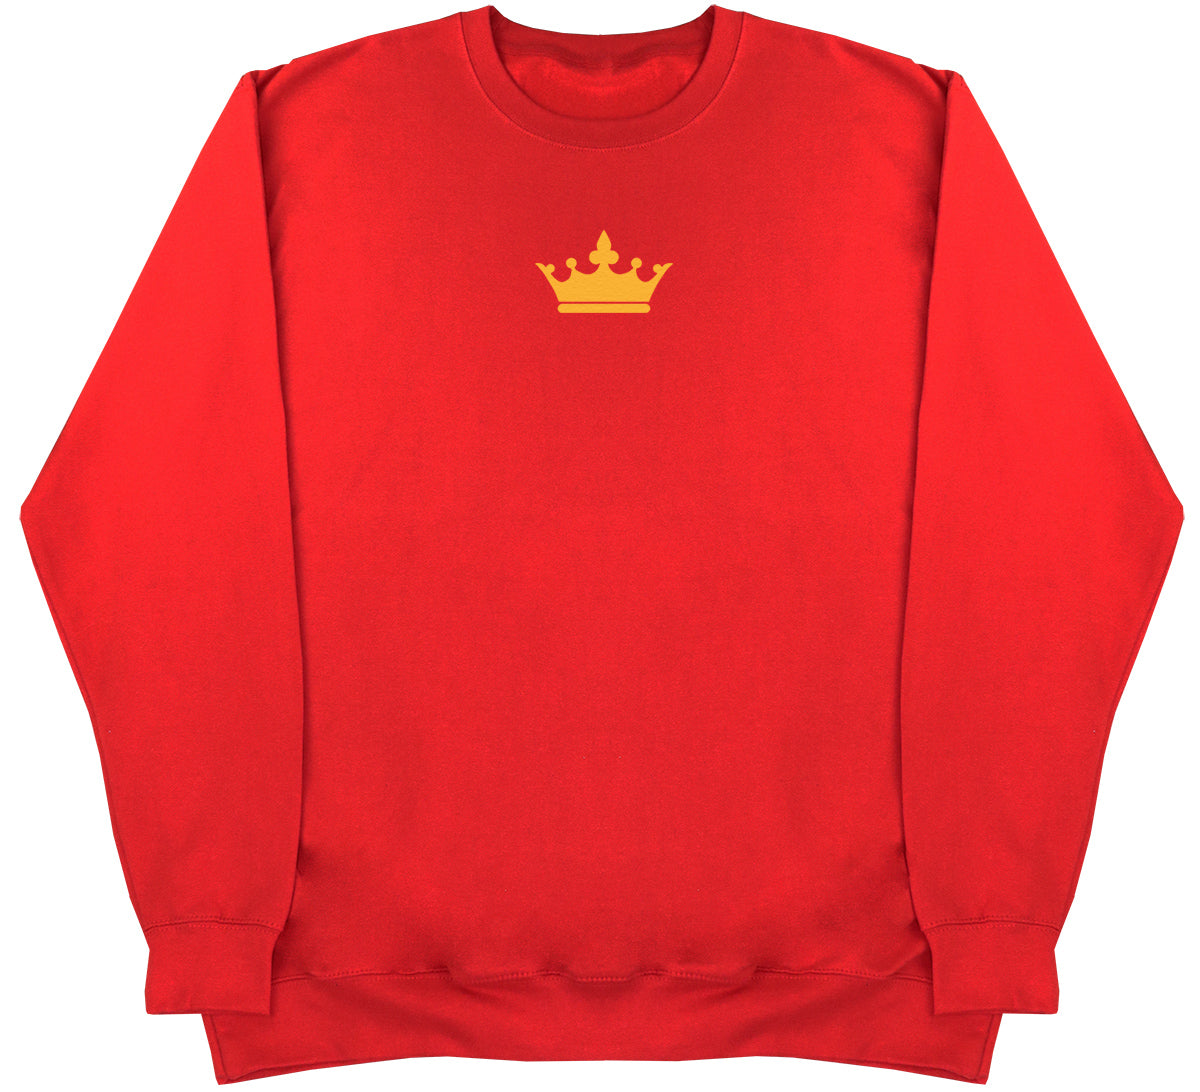 Queen - Huge Oversized Comfy Original Sweater